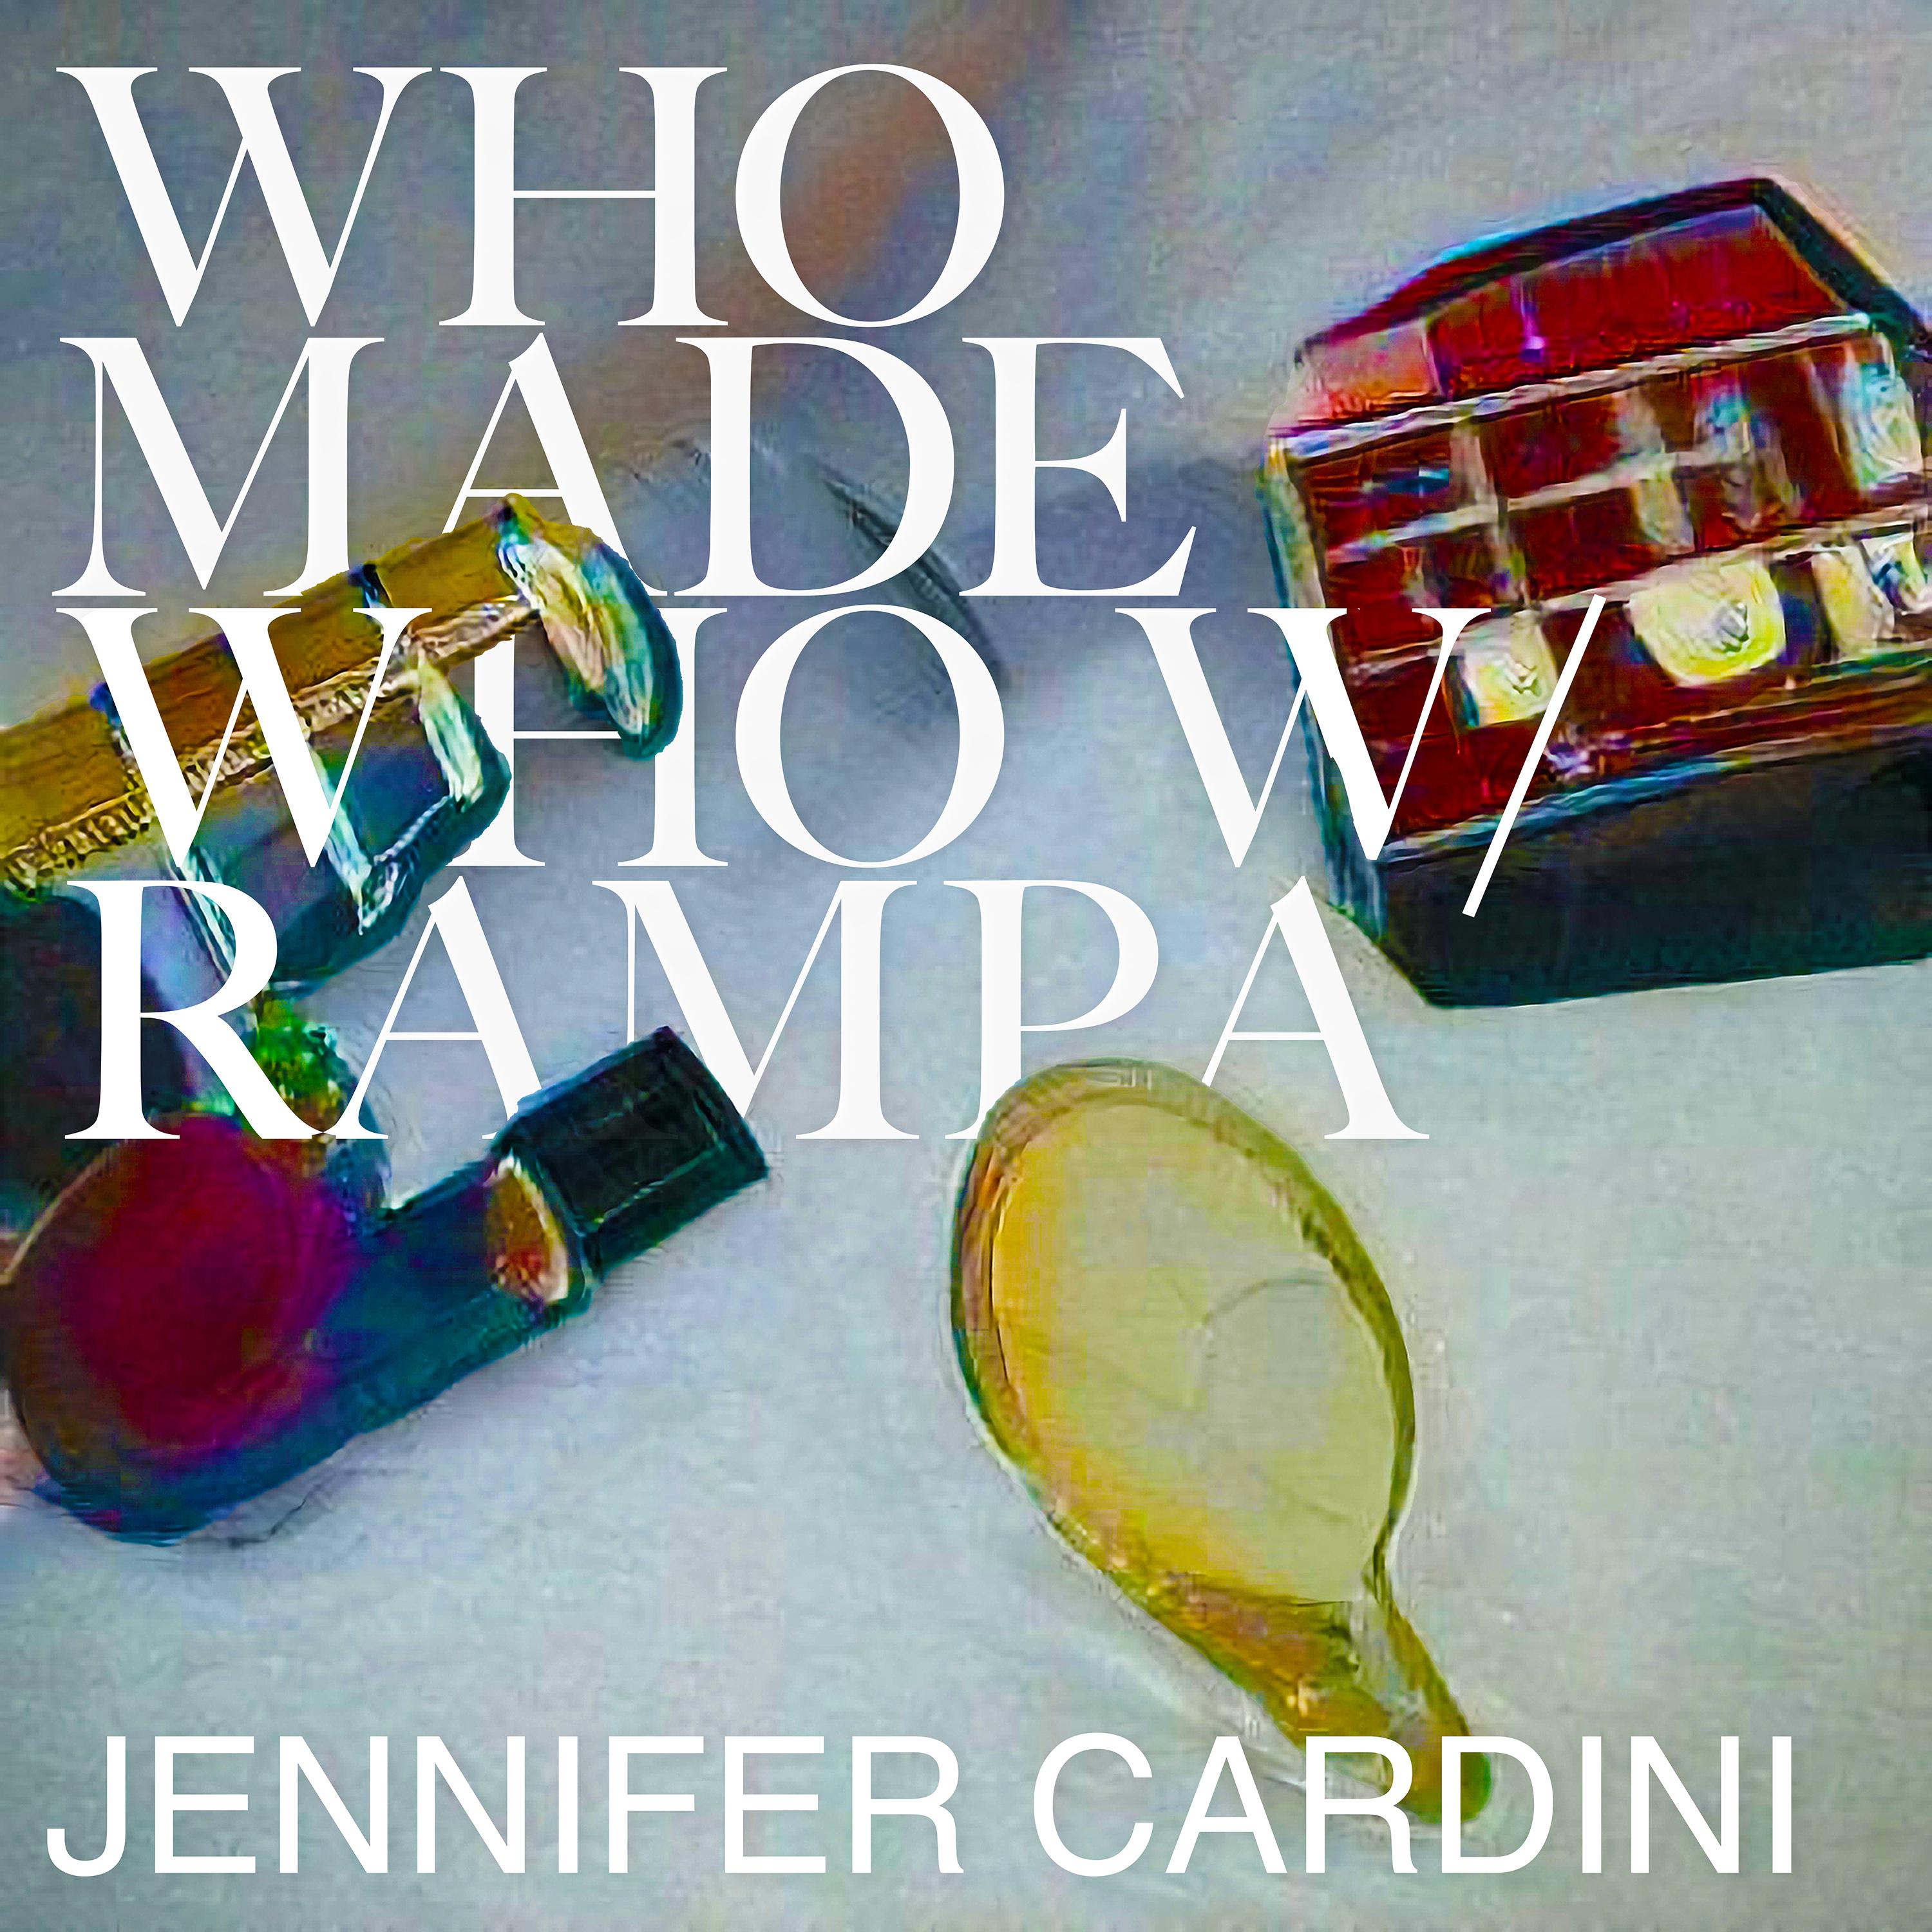 WhoMadeWho - Everyday (Jennifer Cardini Remix)